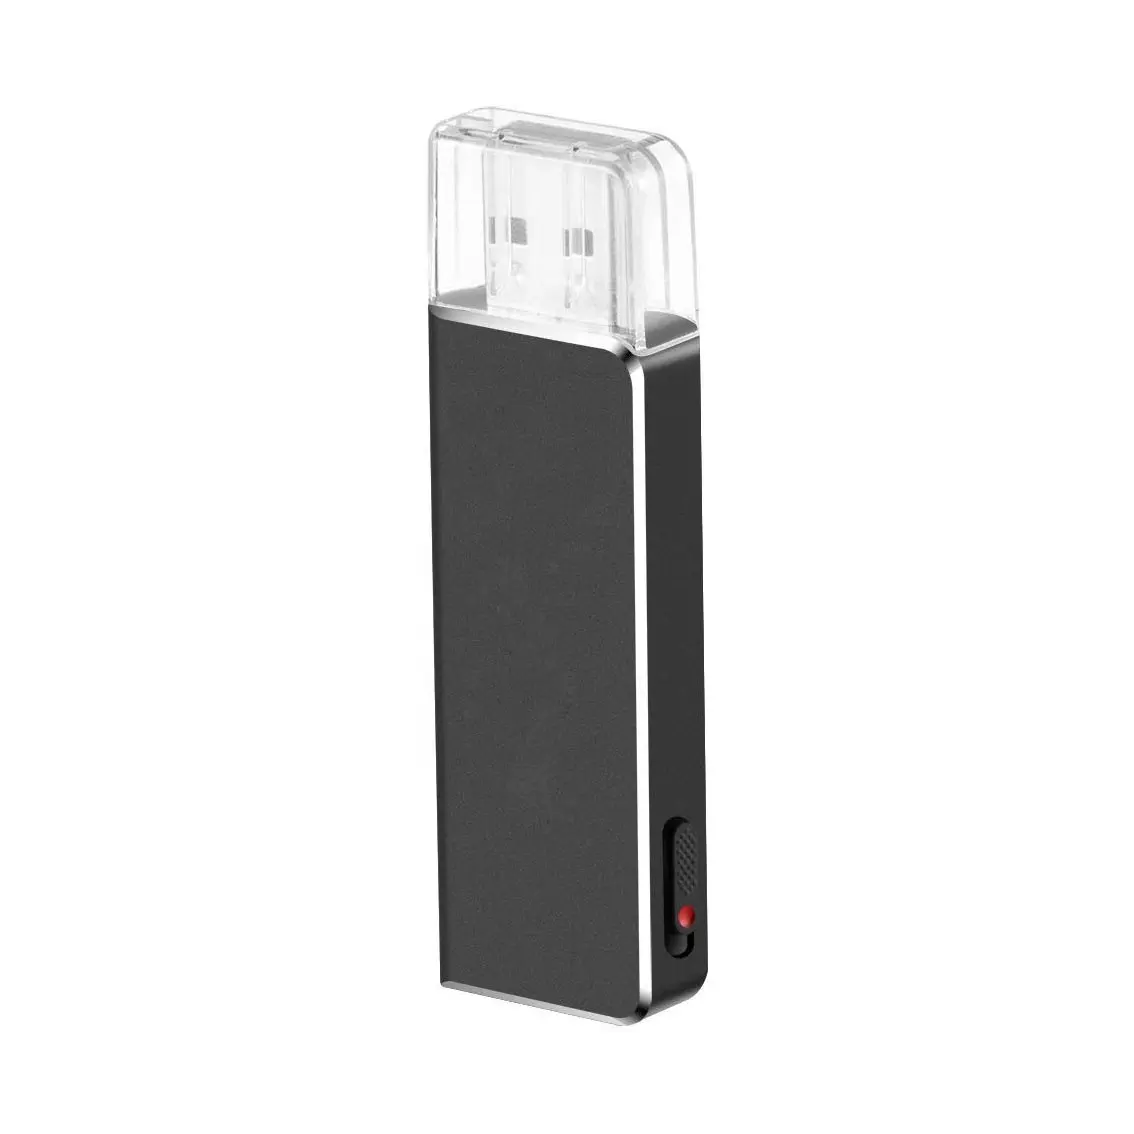 2020 الإمالة شعبية الصوت 8GB المحمولة البسيطة USB مسجل صوتي مع طويلة تسجيل الوقت